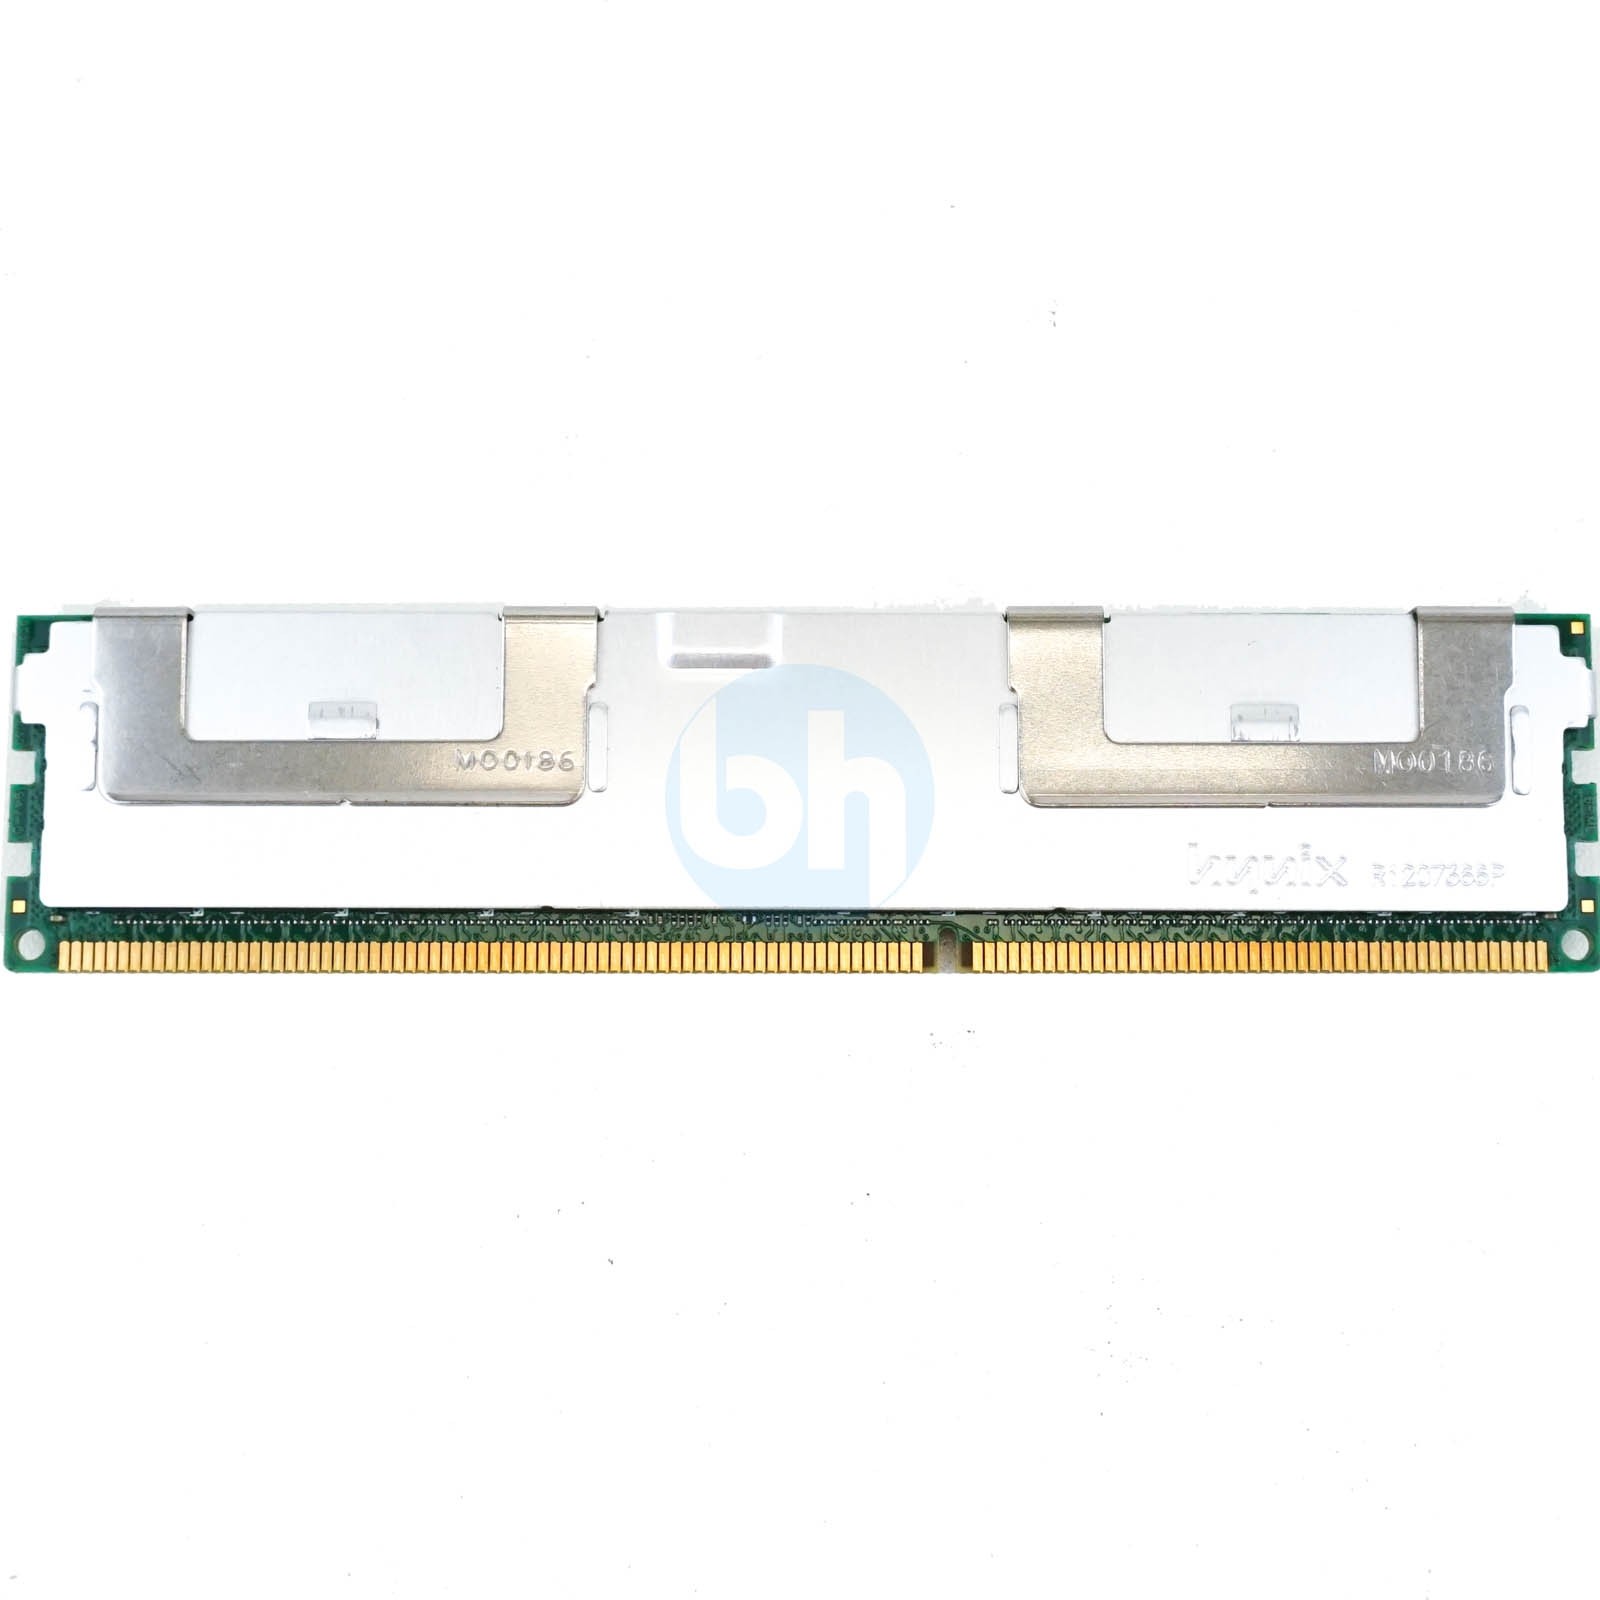 32GB PC3L-12800R (DDR3 1600MHz, 4RX4) ECC Server Memory